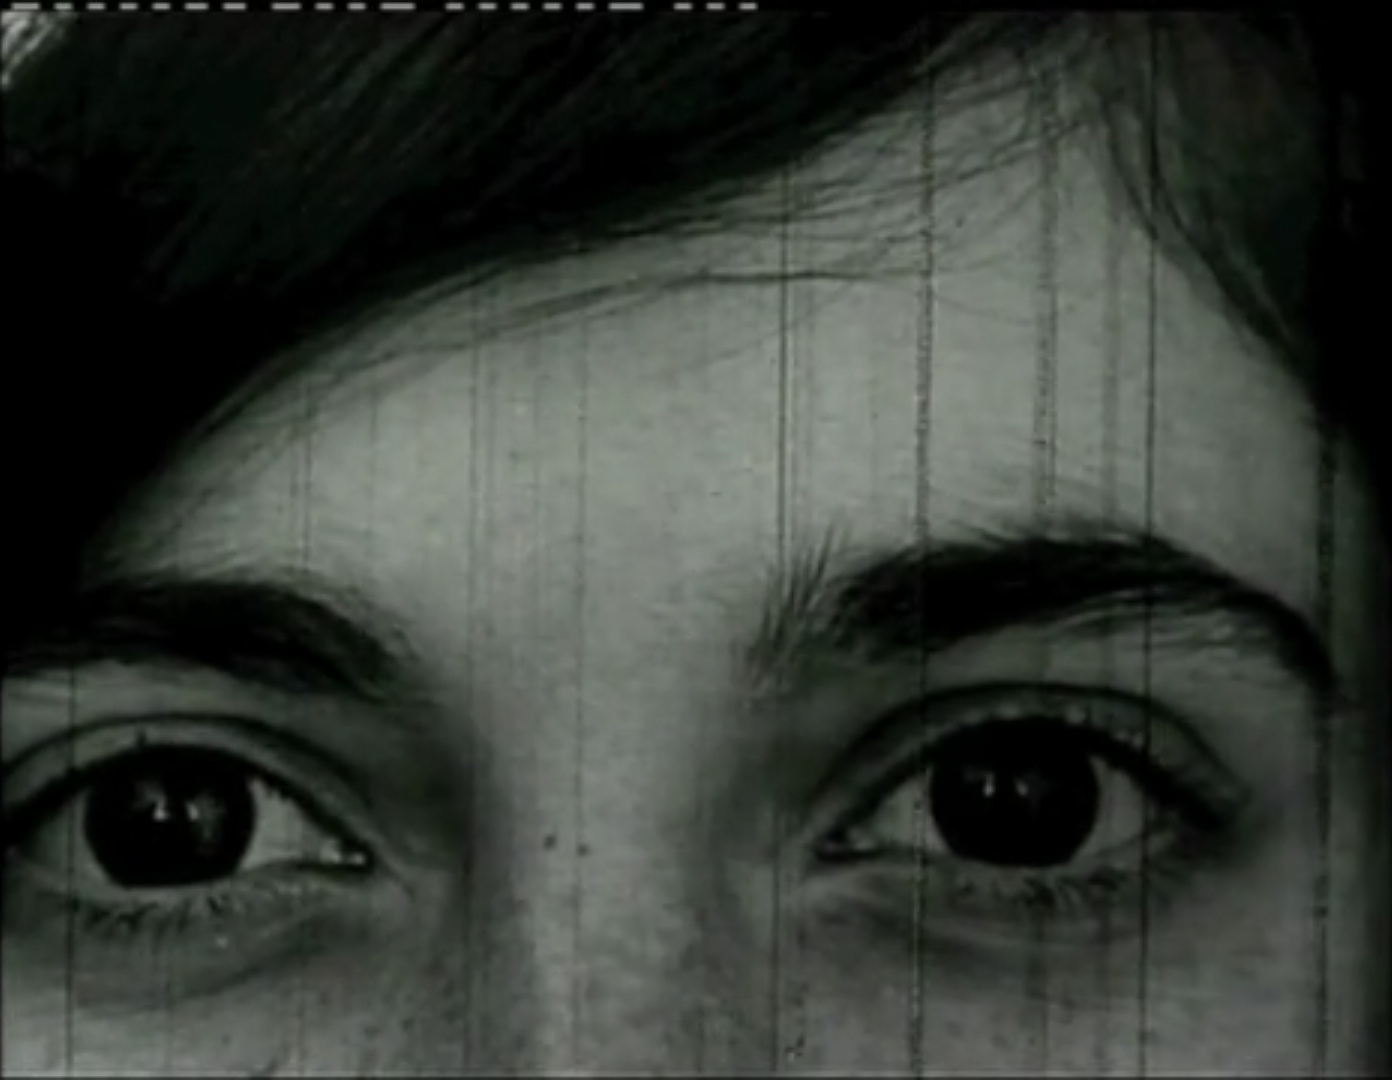 Kadr z czarno-białego filmu. Zbliżenie na twarz osoby z ciemnymi oczami i włosami.